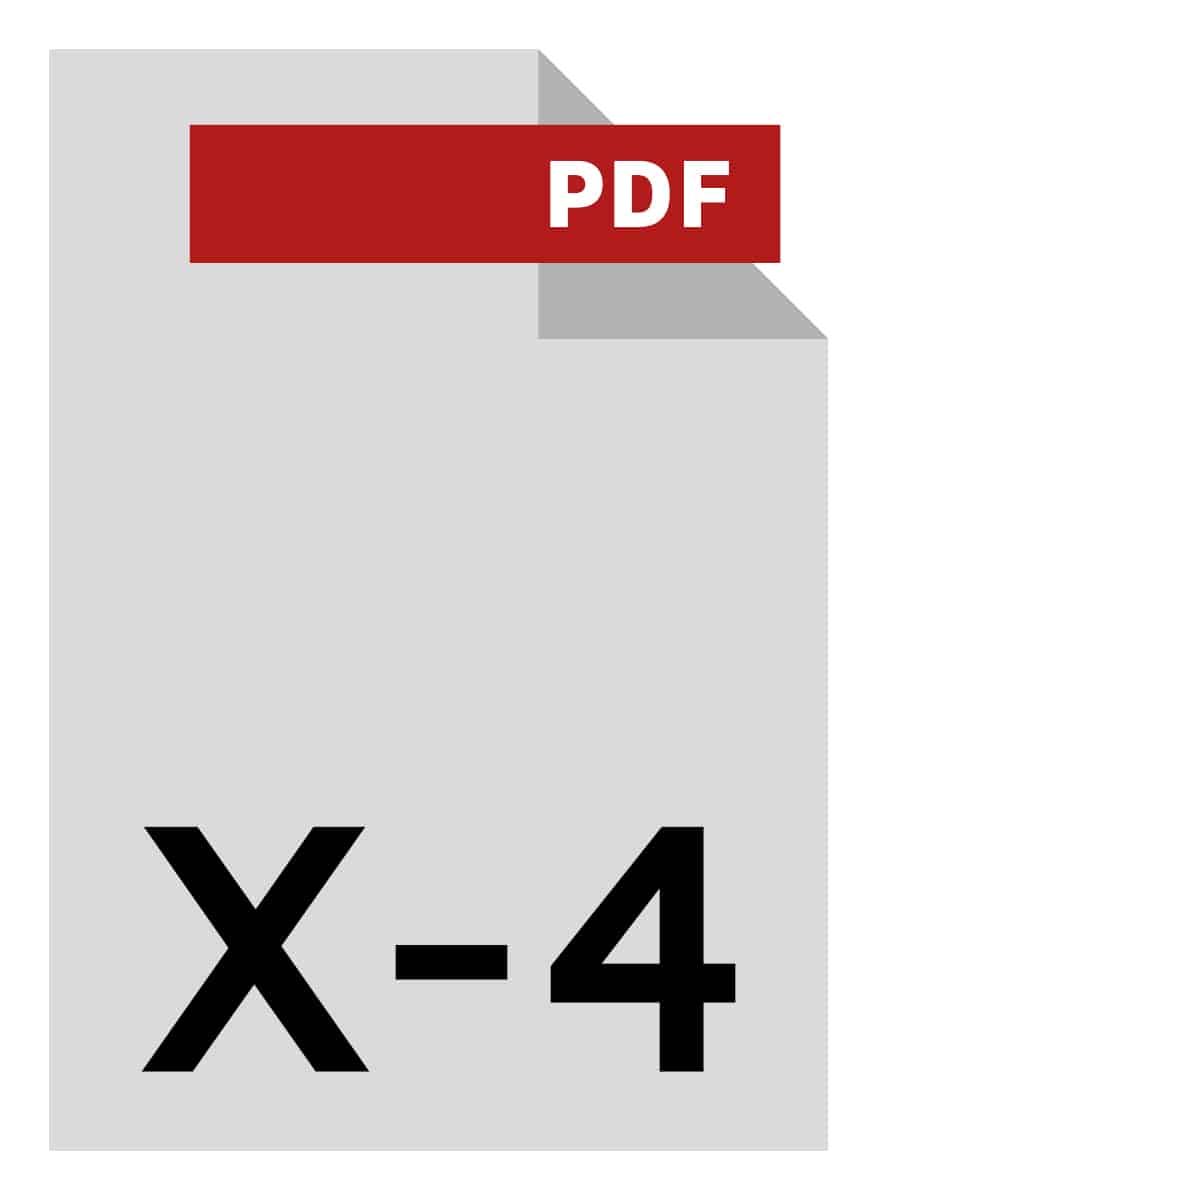 PDFX-4-1